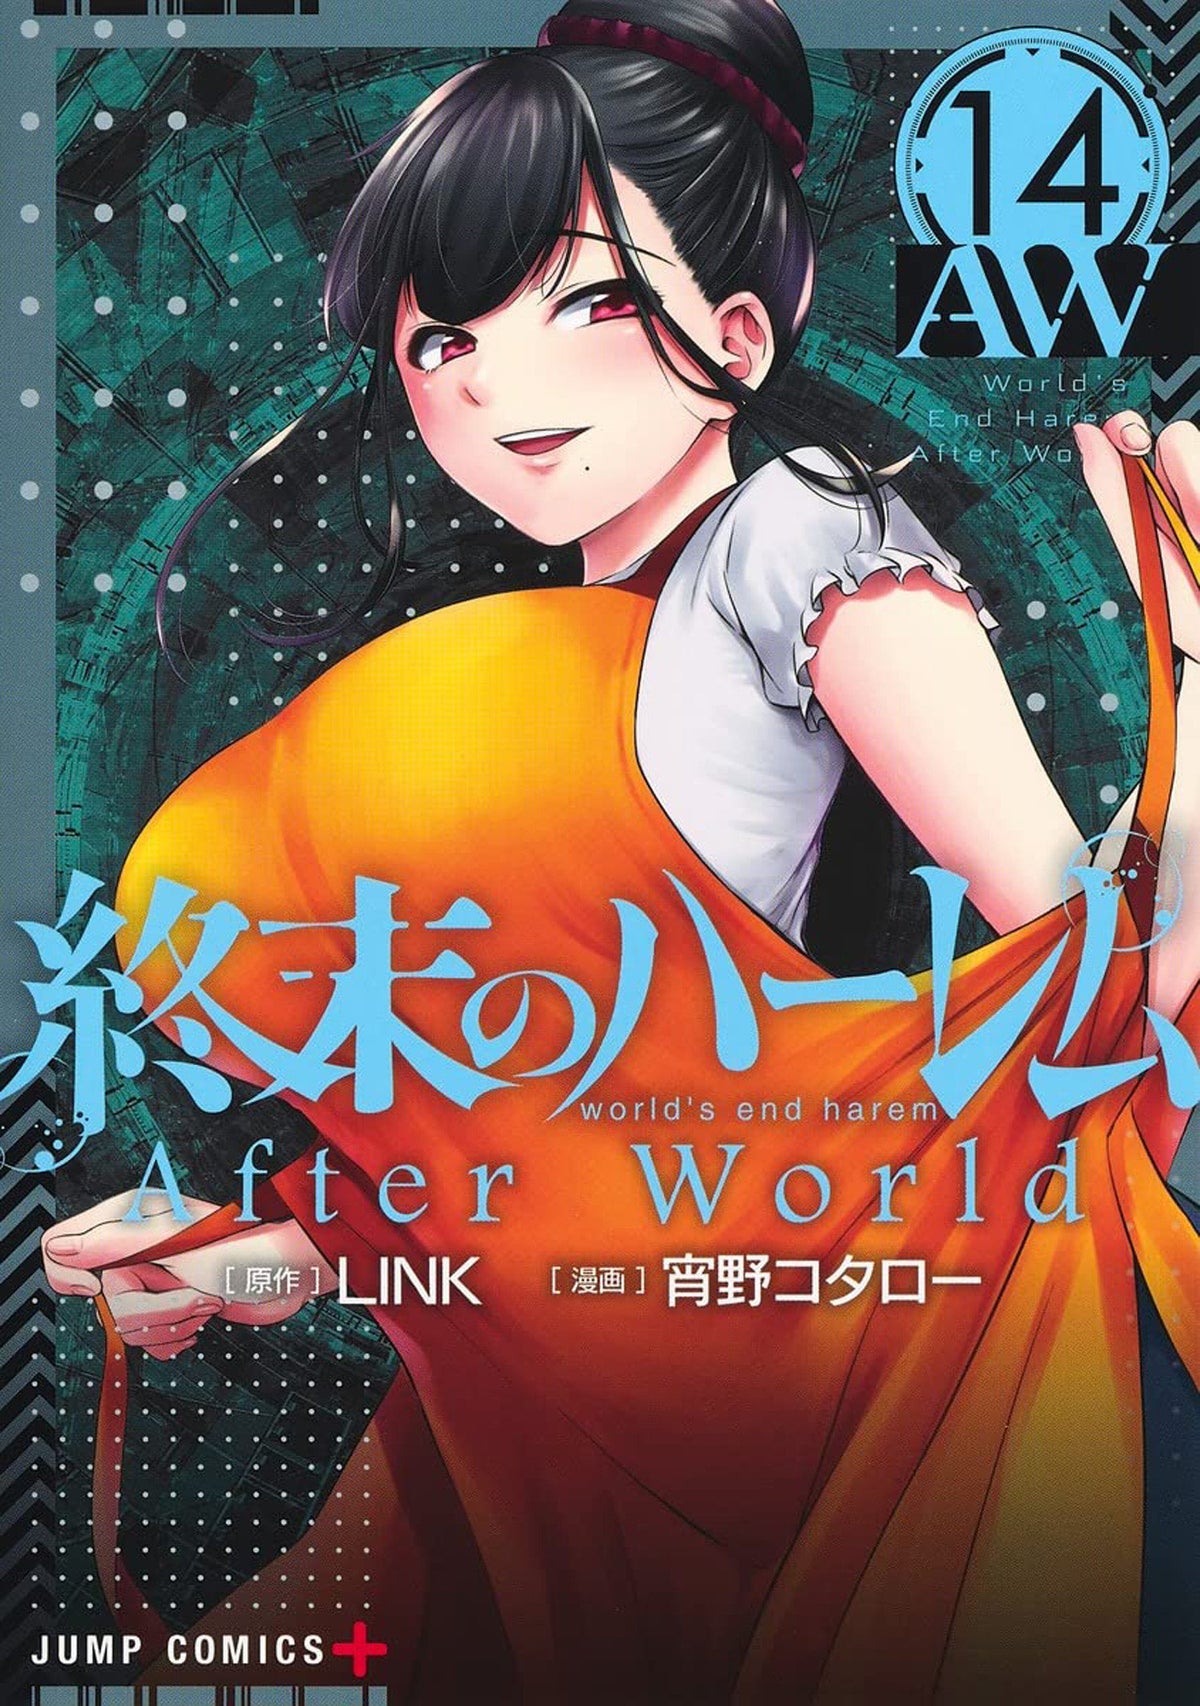 World End Harem - material novo sobre o anime - Caixolanerd